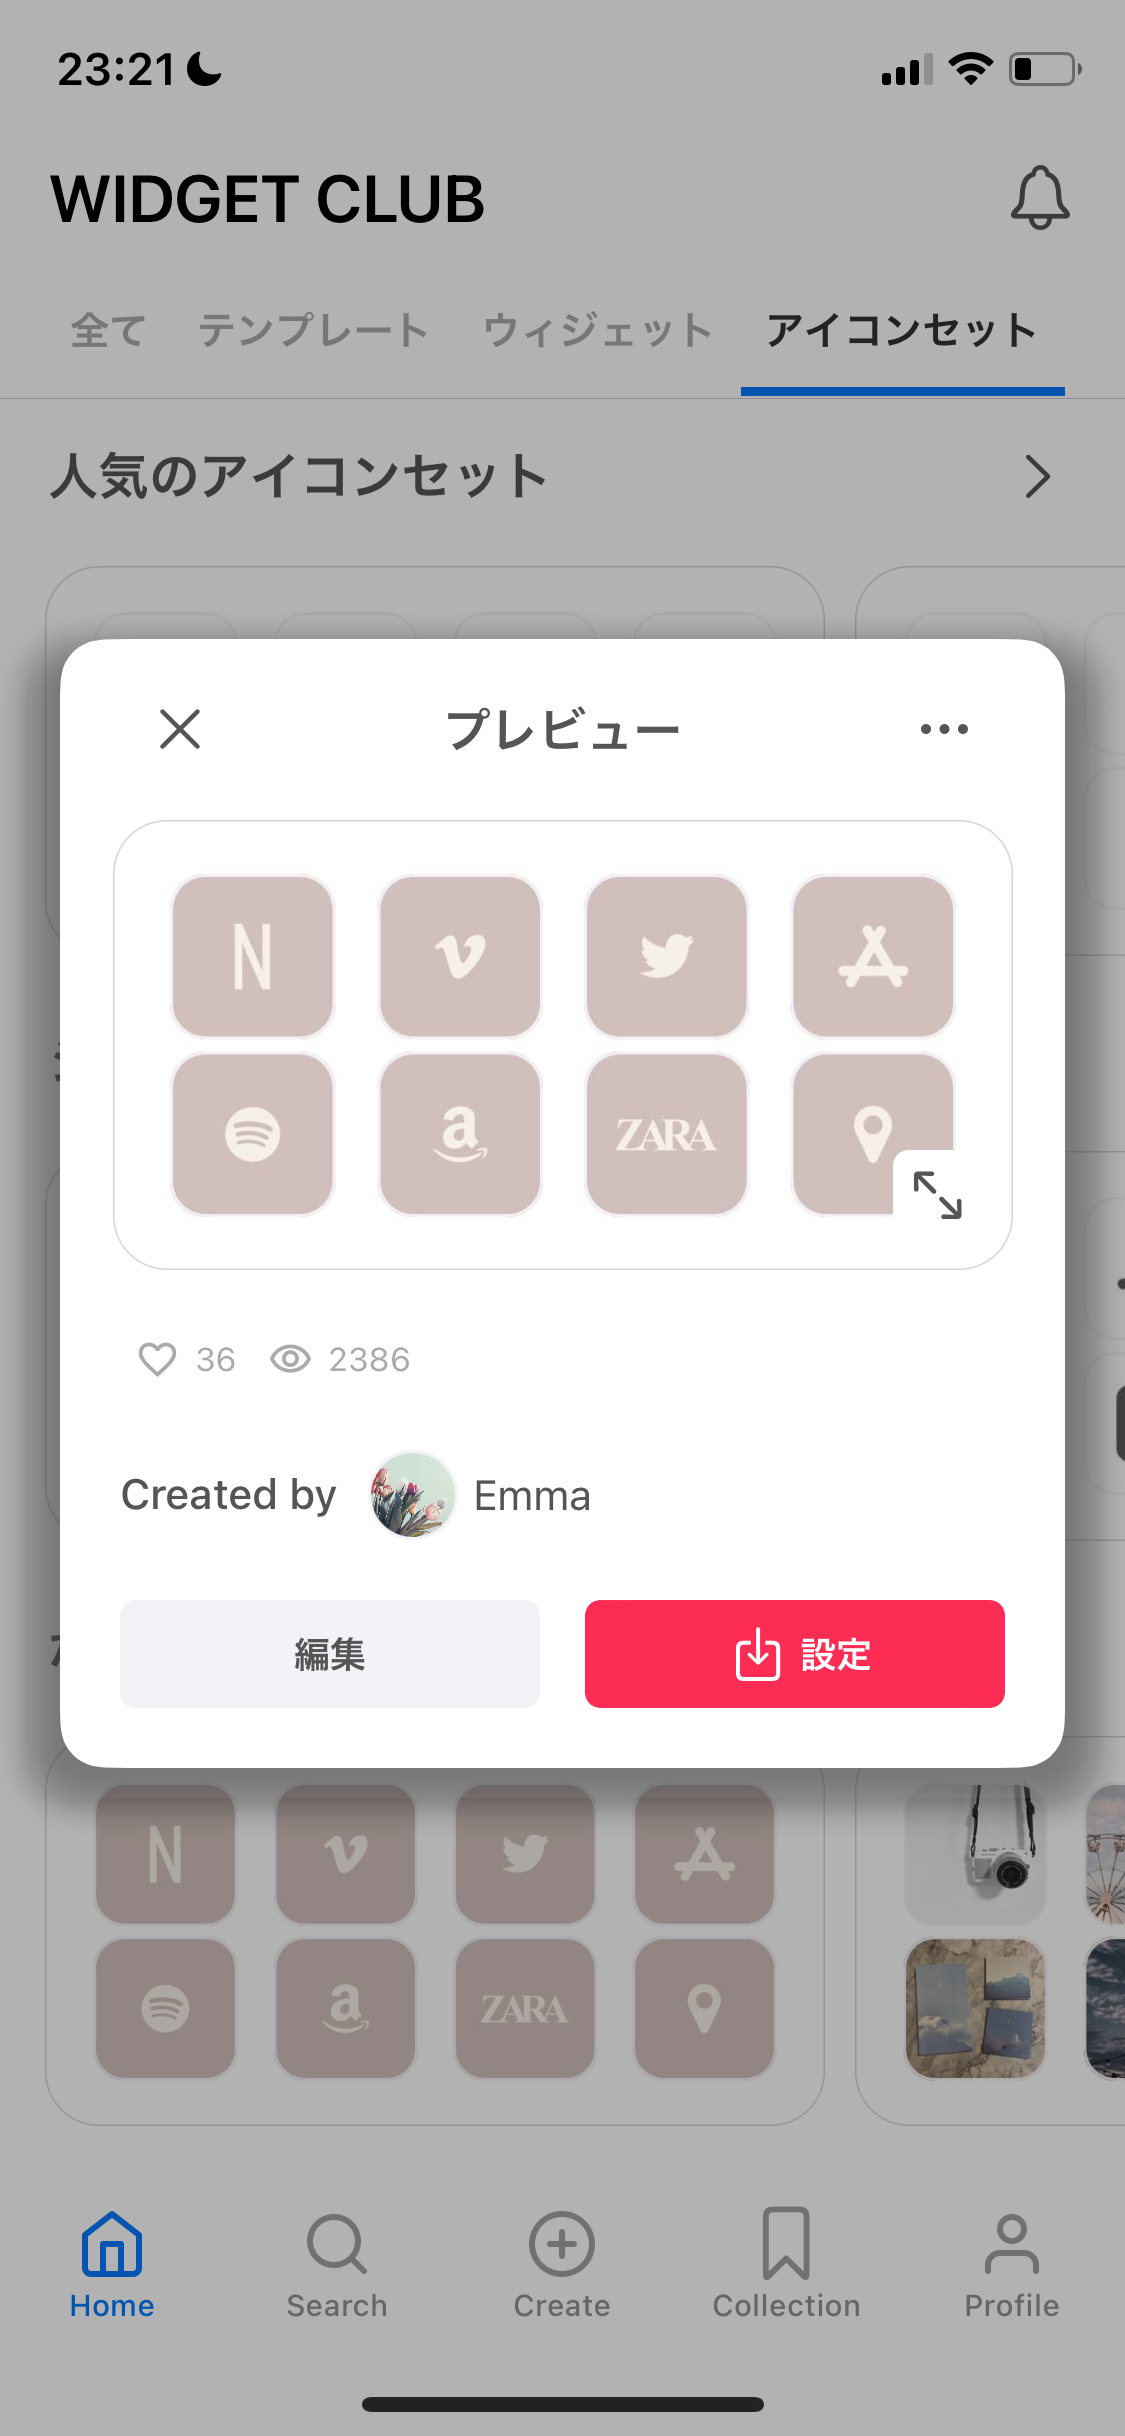 [iOS]あなたのホーム画面にアイコンを設定する方法の画像1枚目